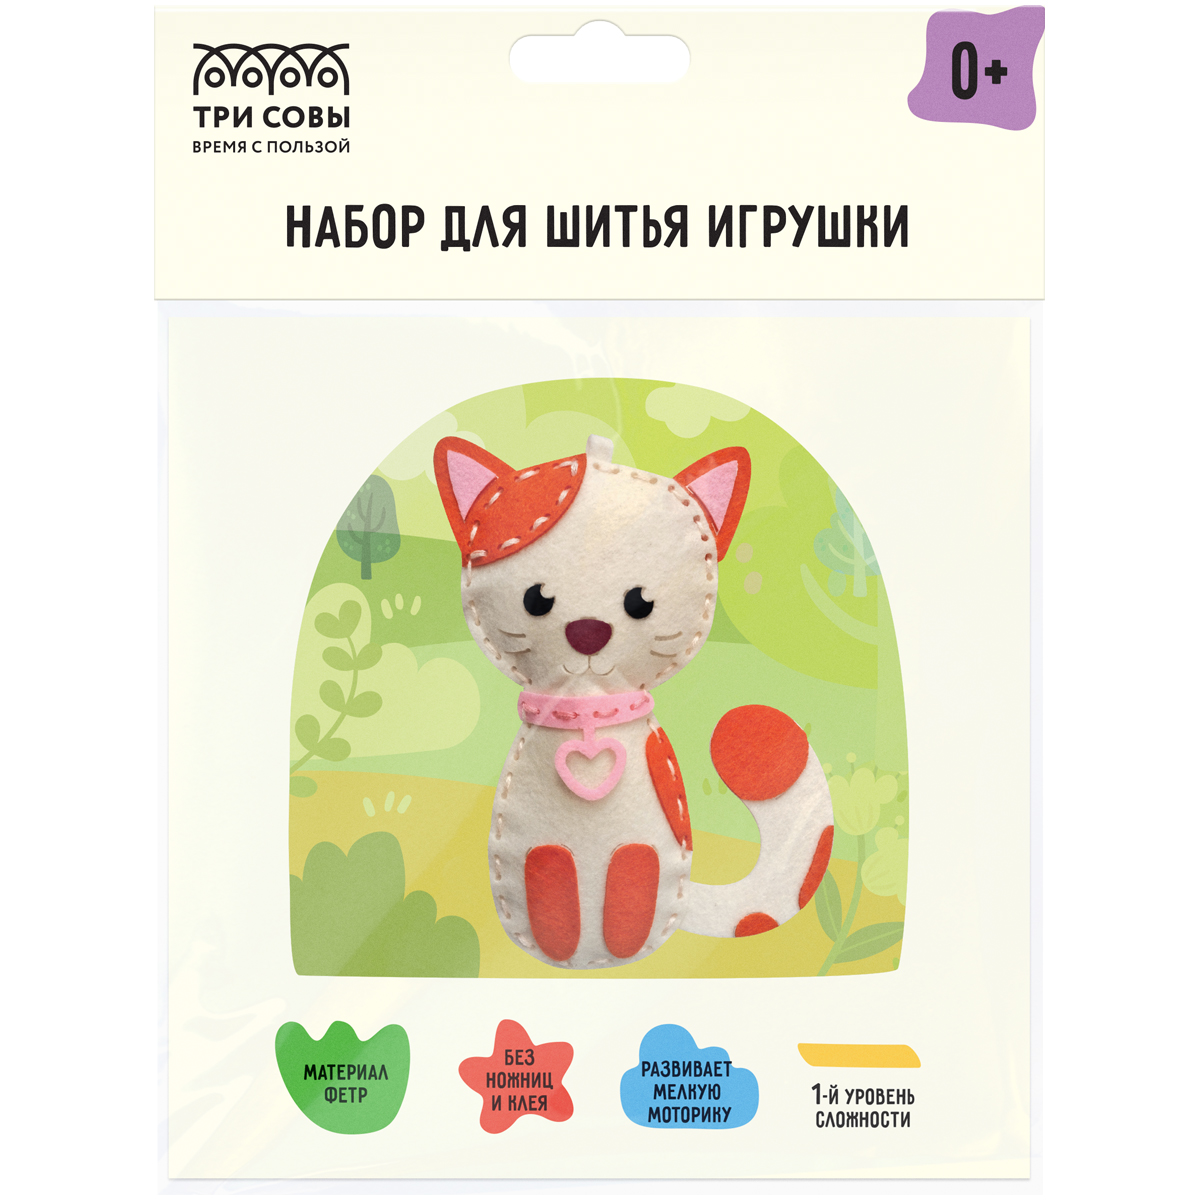 Набор для шитья игрушки ТРИ СОВЫ "Кошечка", пакет с европодвесом